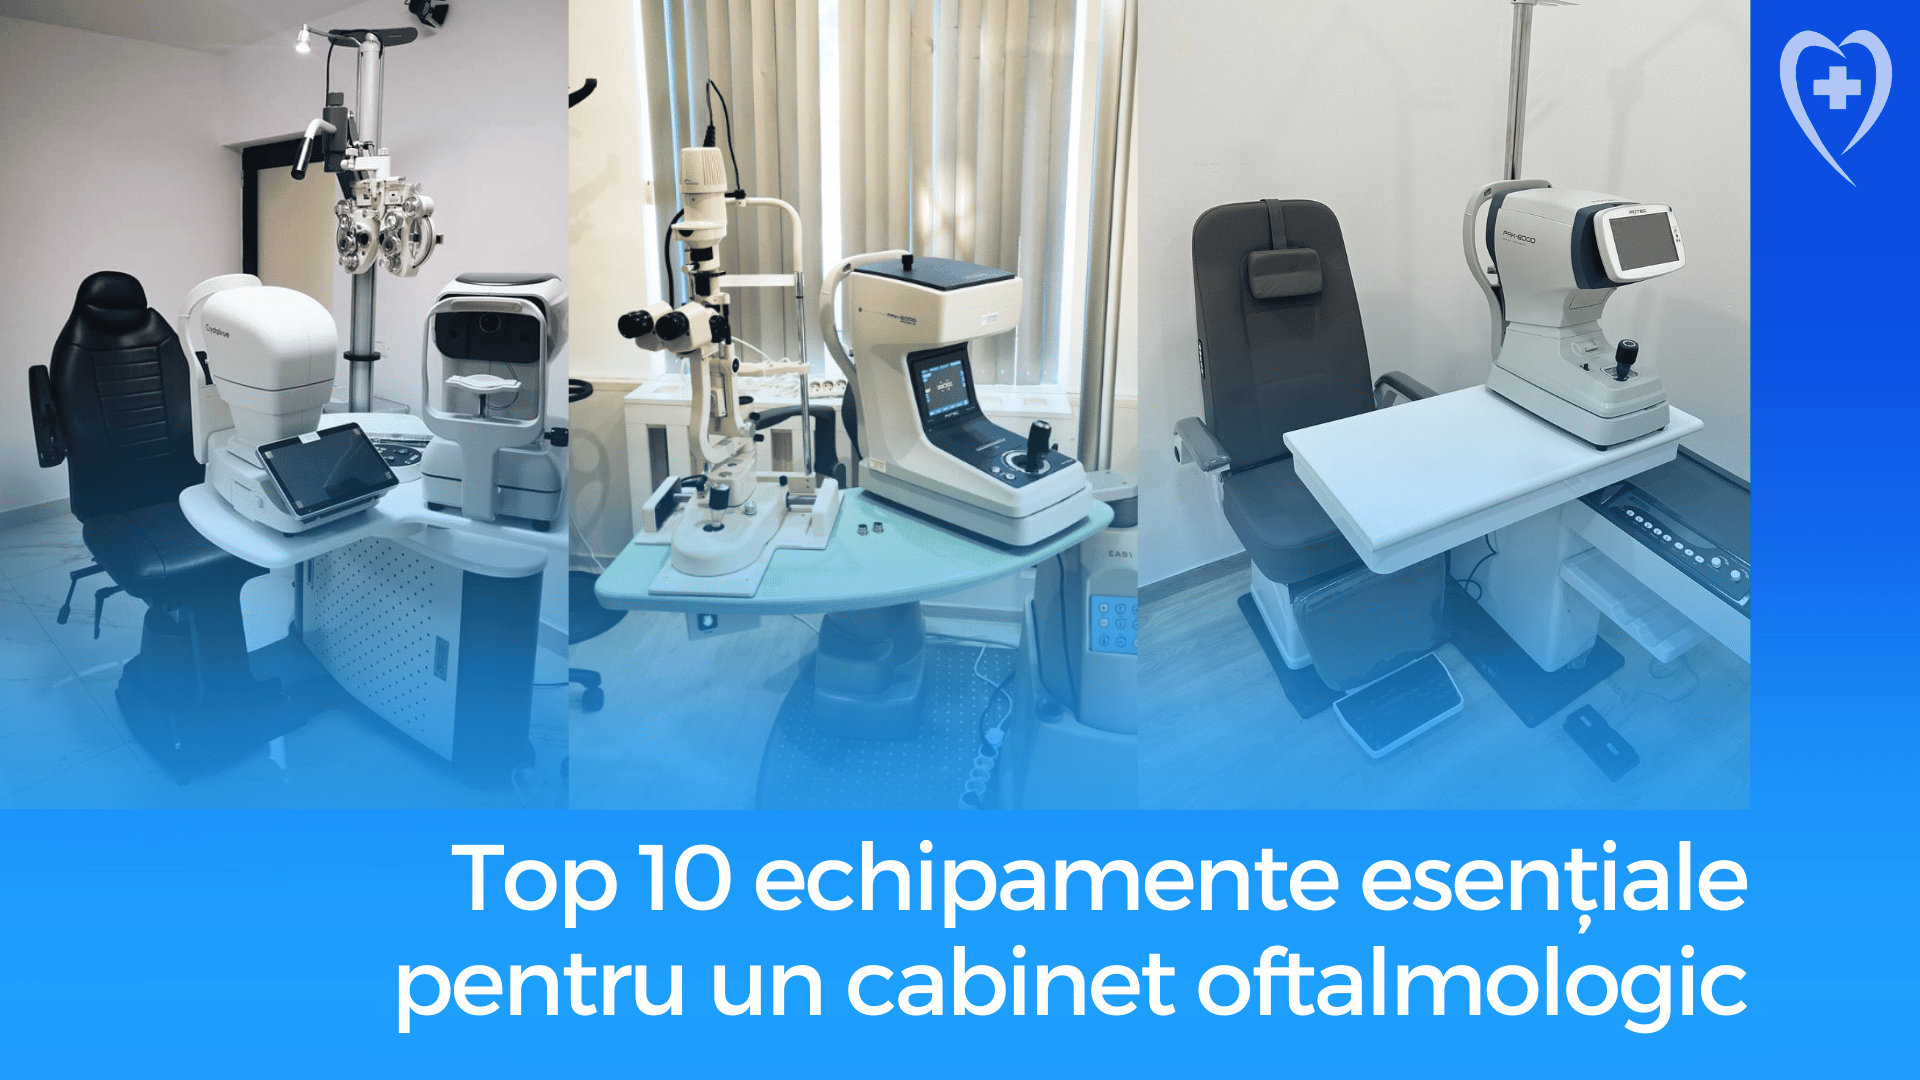 Top 10 echipamente esentiale pentru un cabinet oftalmologic